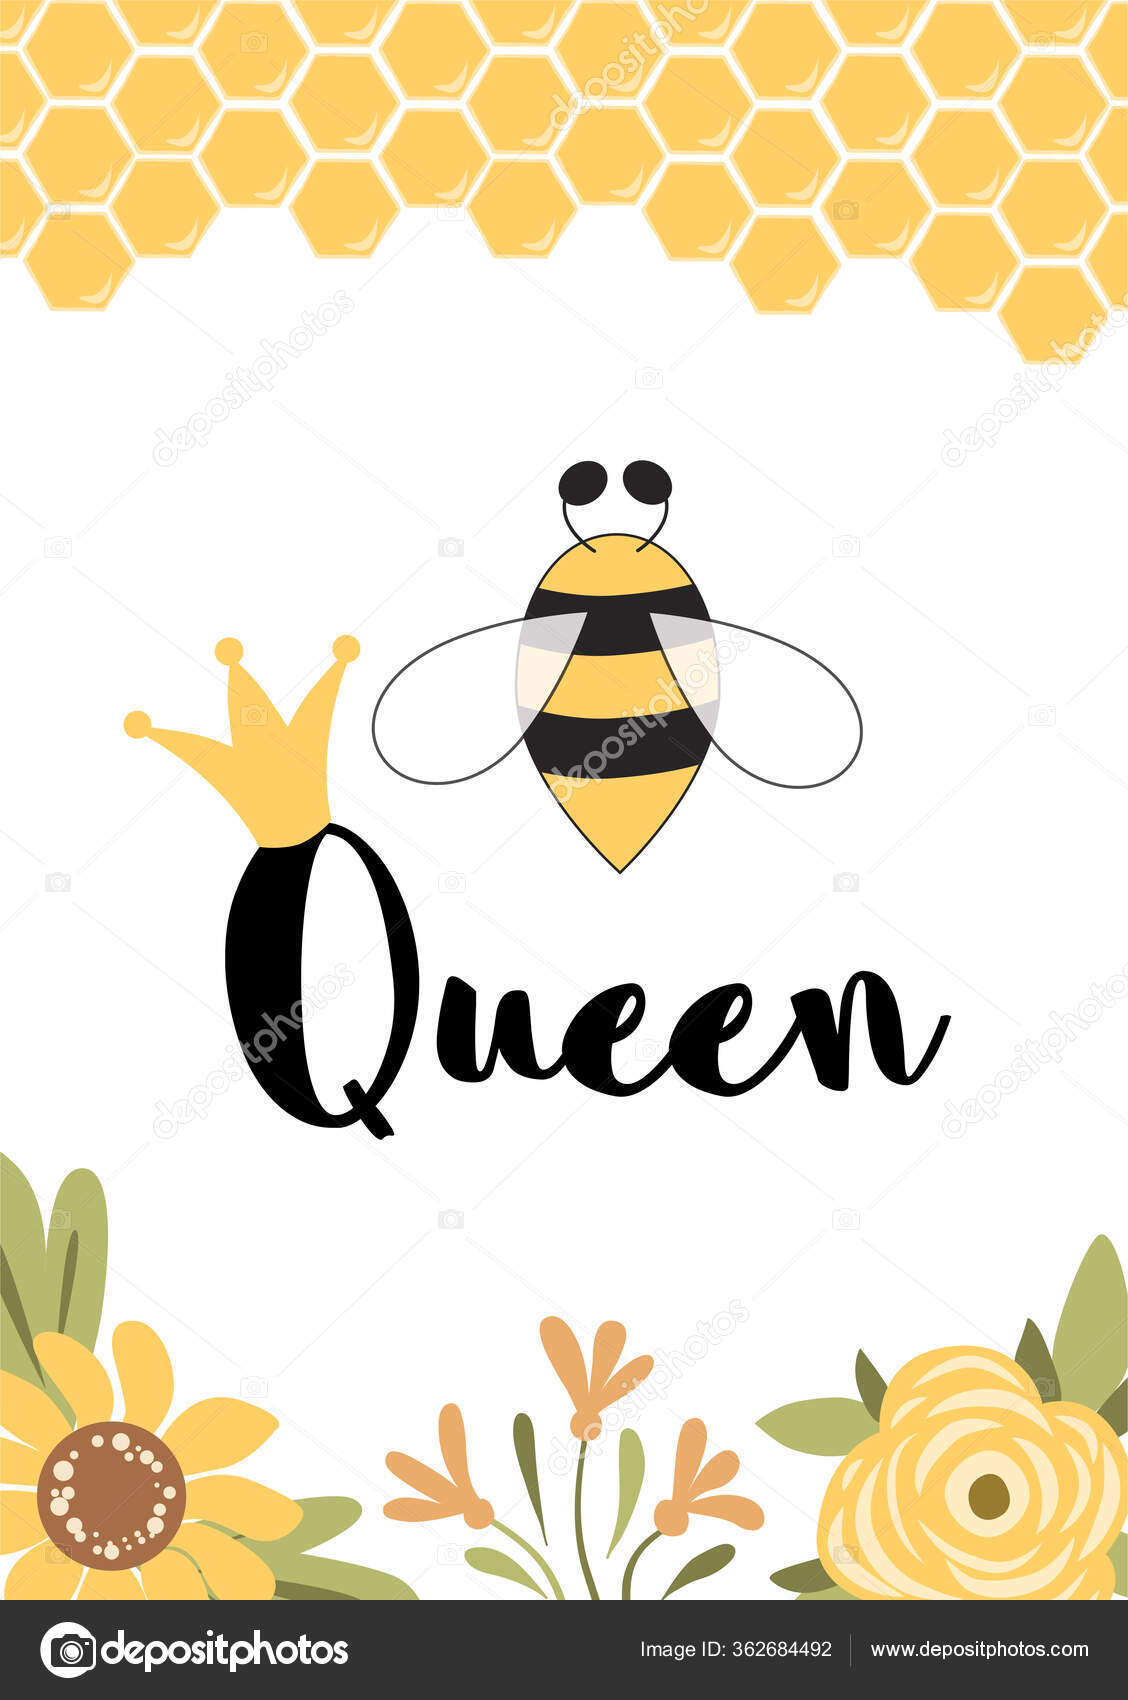 Honeycomb: Dòng sản phẩm mật ong là một trong những sản phẩm tự nhiên chất lượng cao được yêu thích nhất trên thị trường. Hình ảnh vòng xoắn của mật ong trên nền màu vàng óng ánh của những ô ngập tràn mật ong sẽ khiến bạn gợi lại hình ảnh của một ngày hè tươi sáng và đầy màu sắc.